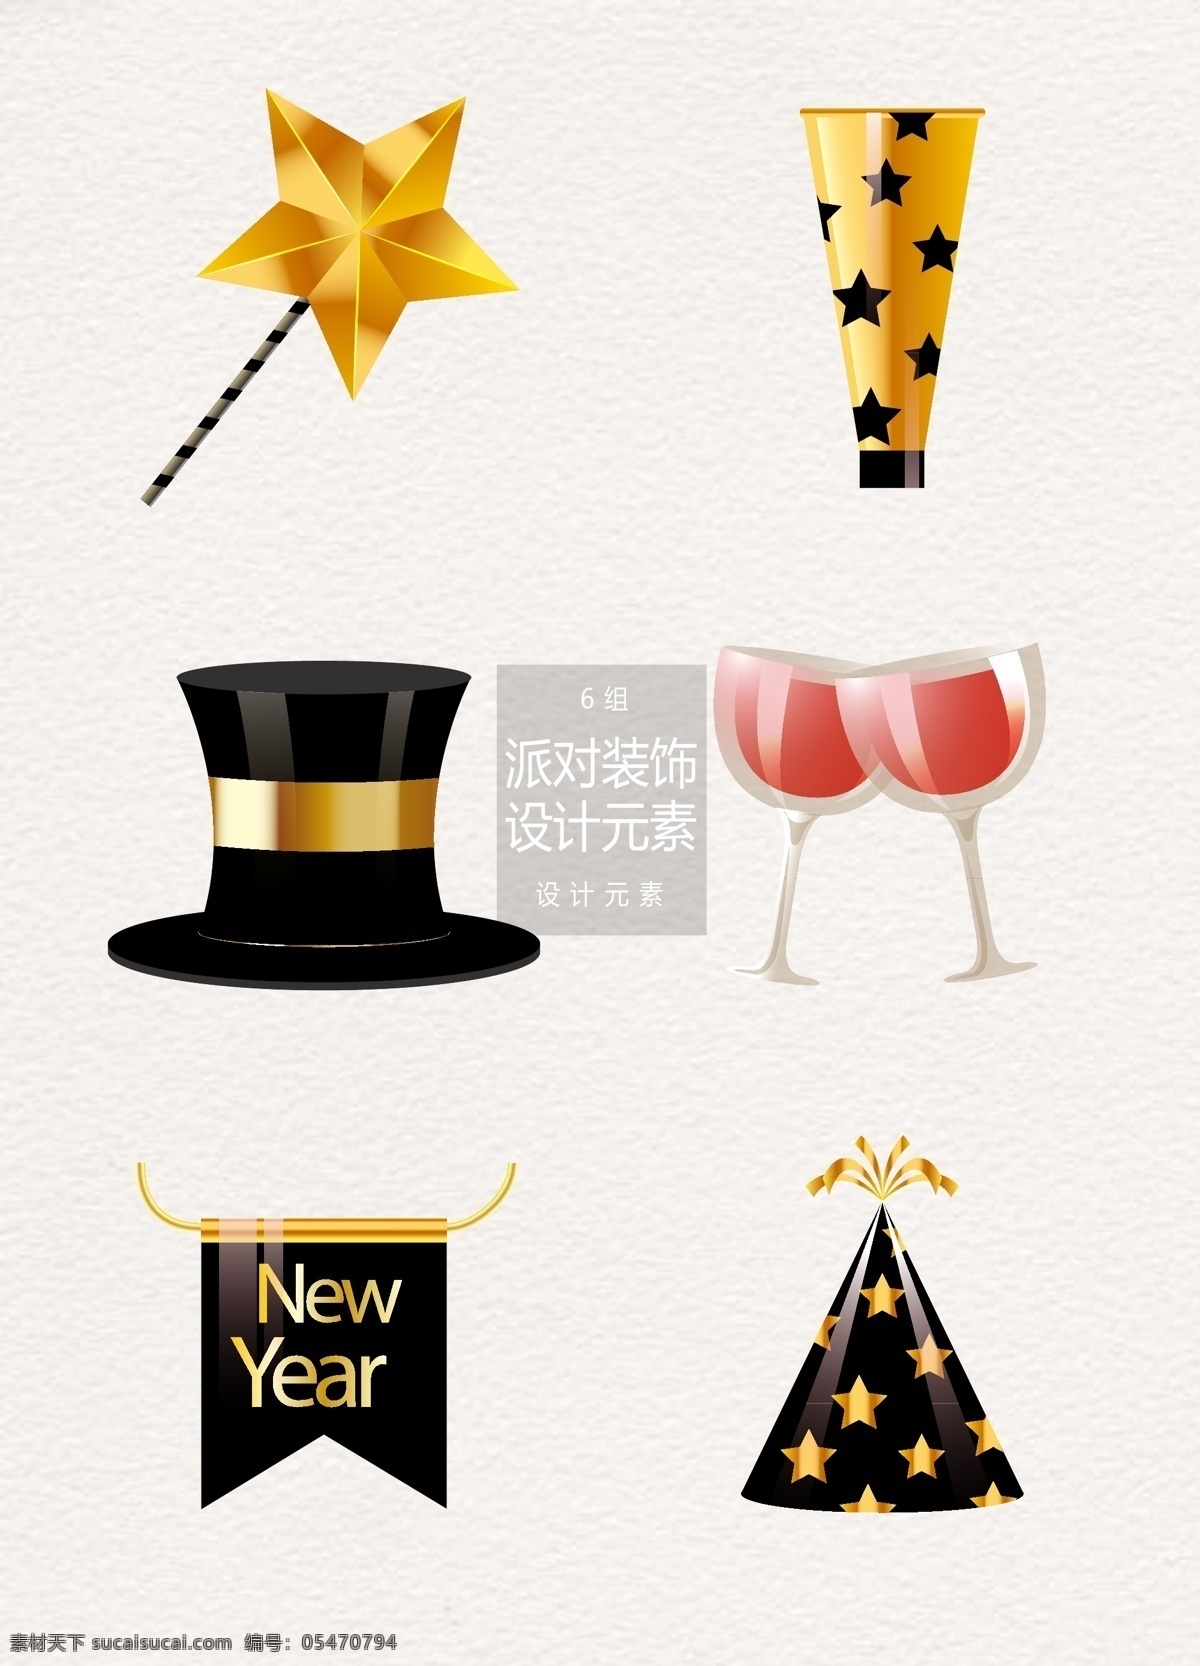 新年 派对 装饰设计 元素 聚会 五角星 红酒 干杯 派对装饰 新年派对 魔术帽